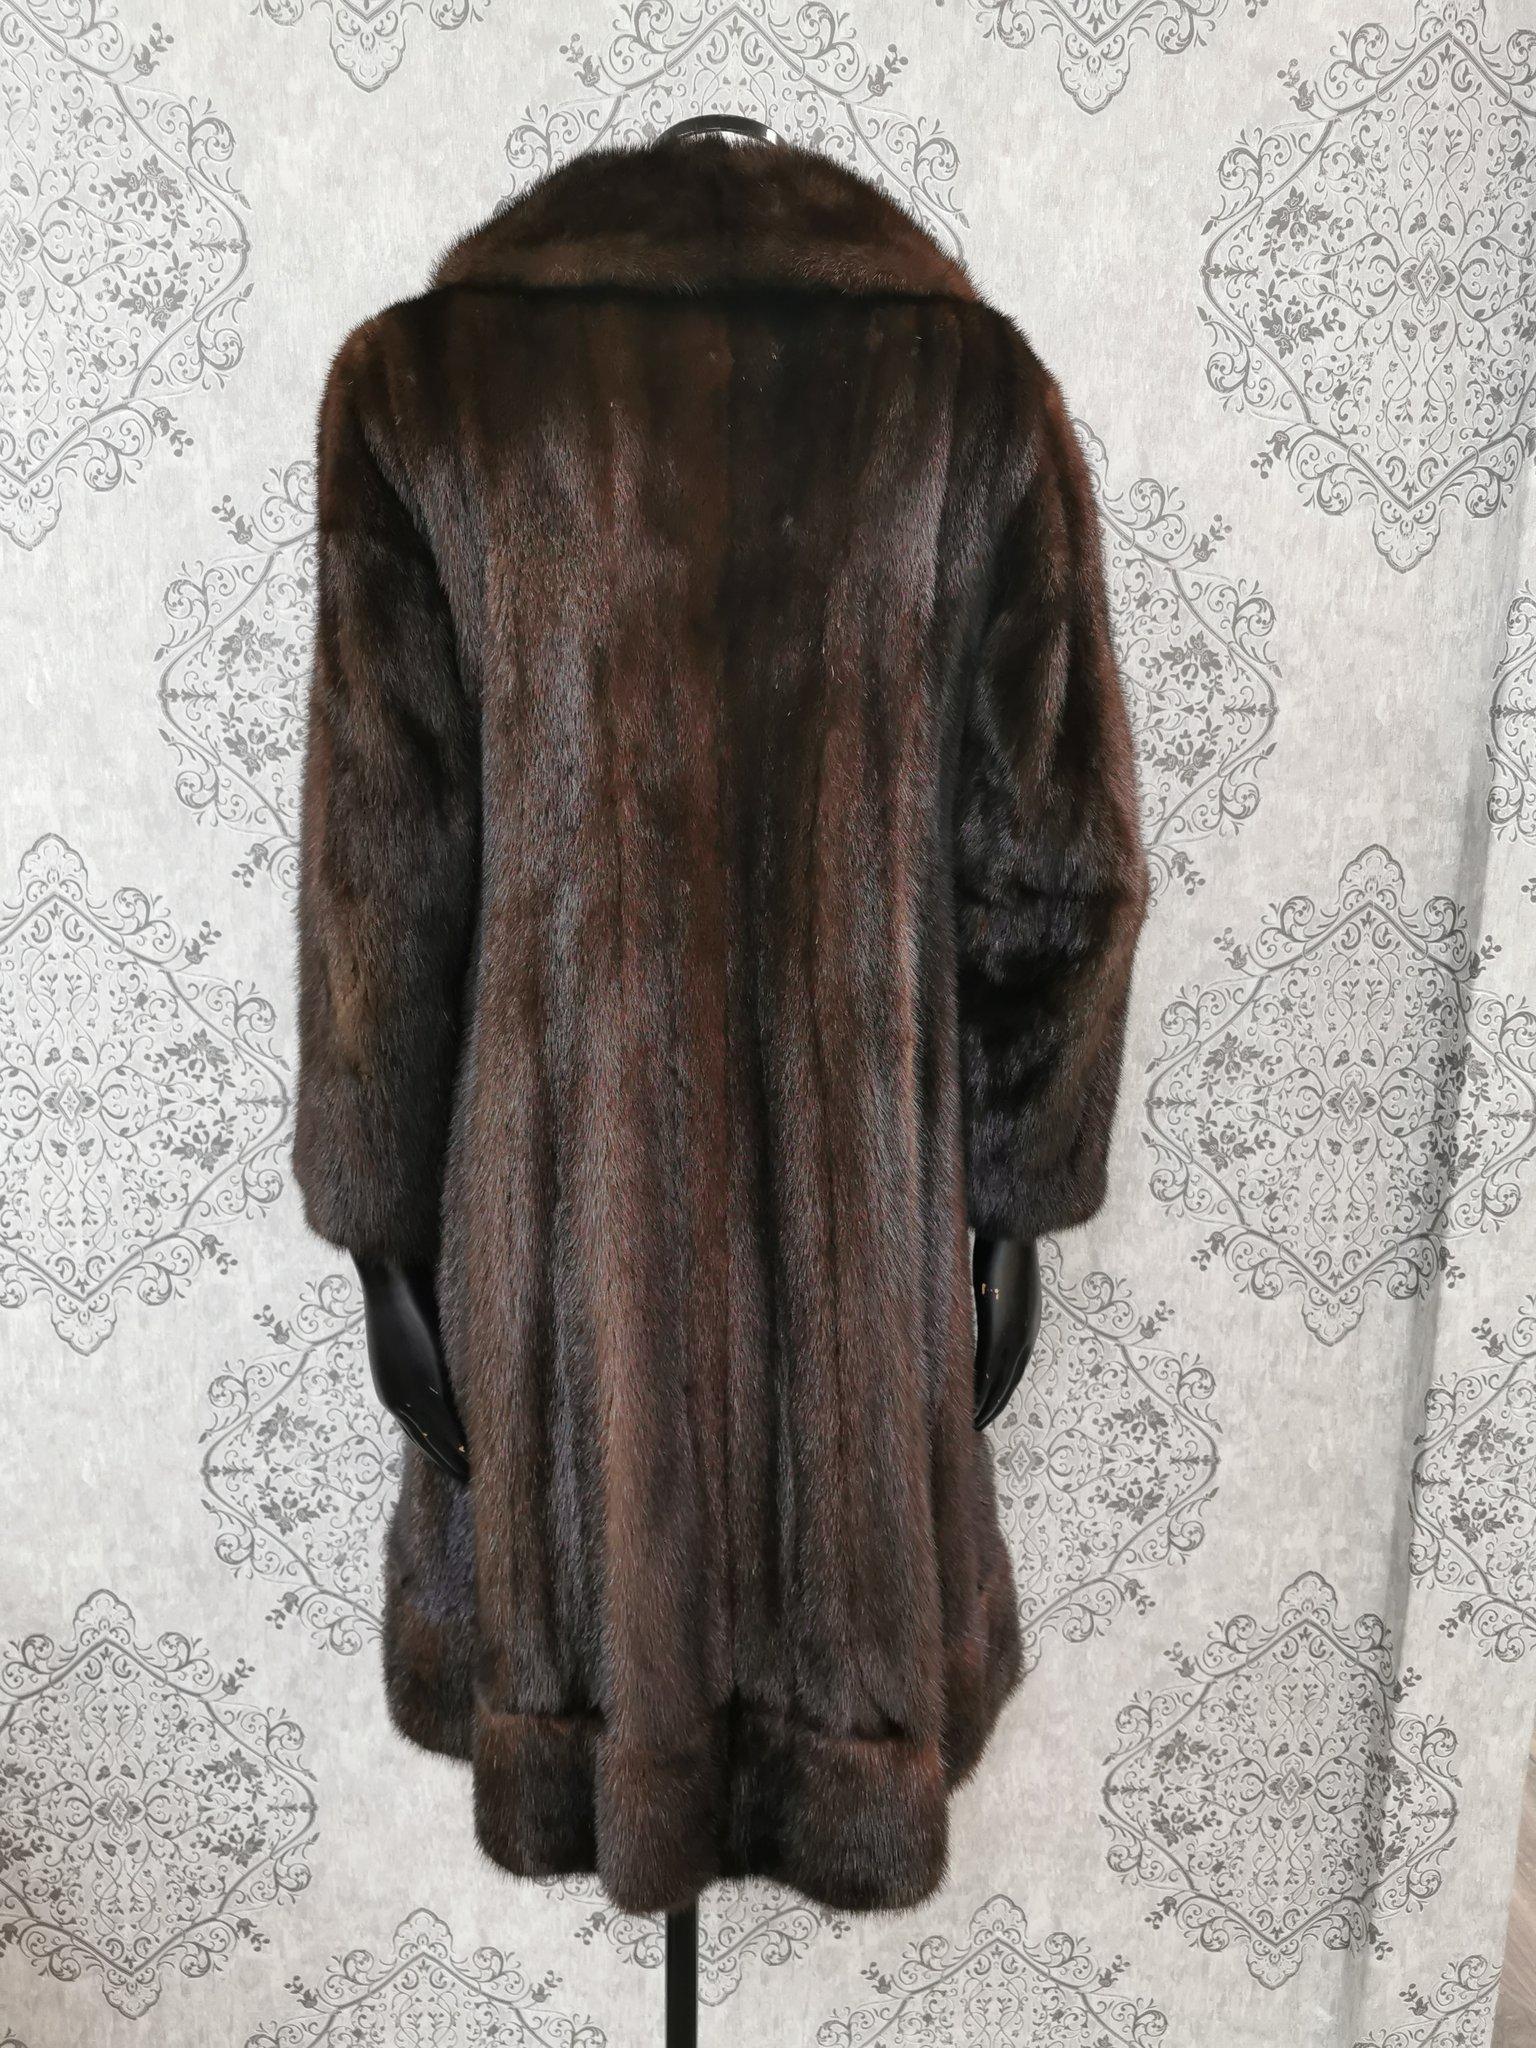 Christian dior / Holt renfrew mink fur coat size 6 For Sale at 1stDibs ...